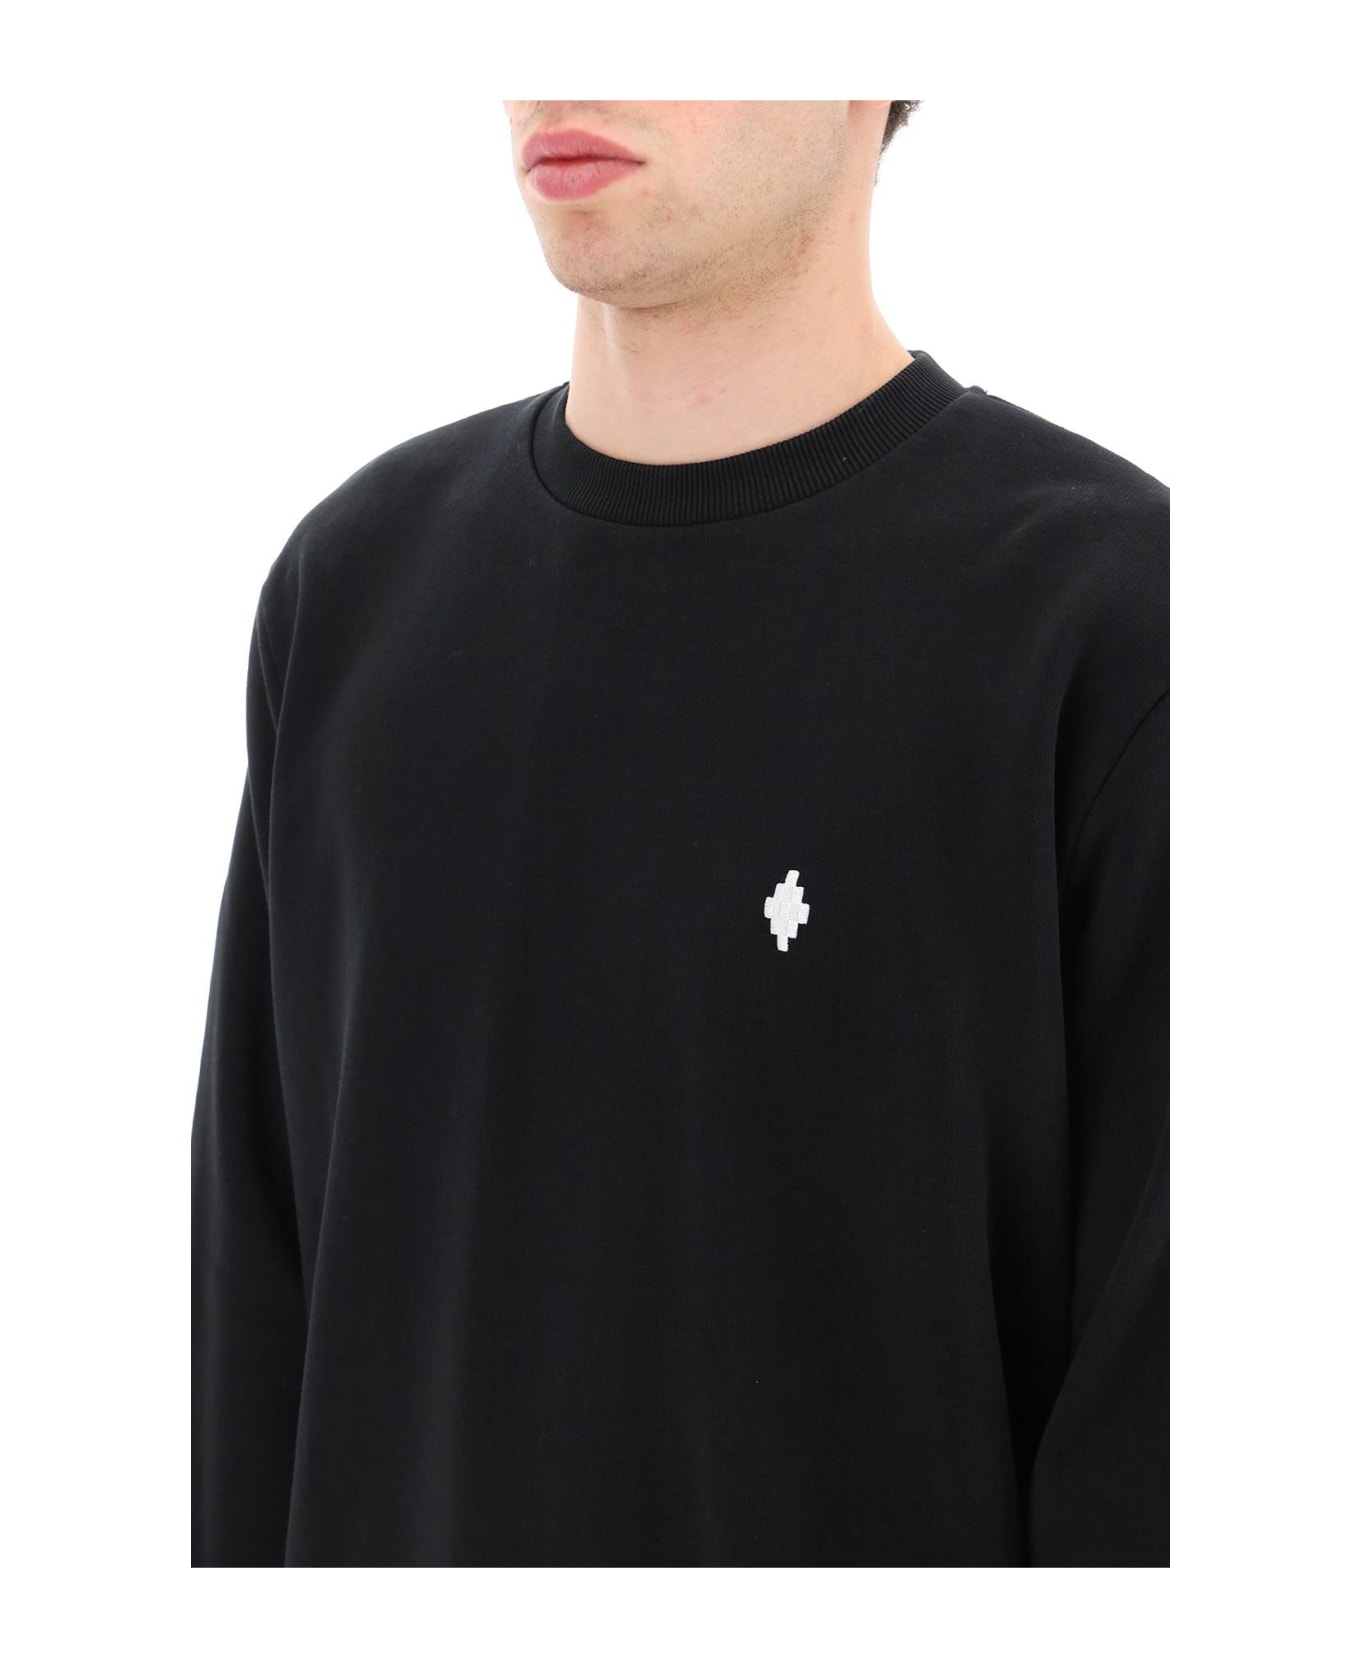 Marcelo Burlon Logo Sweatshirt - Black